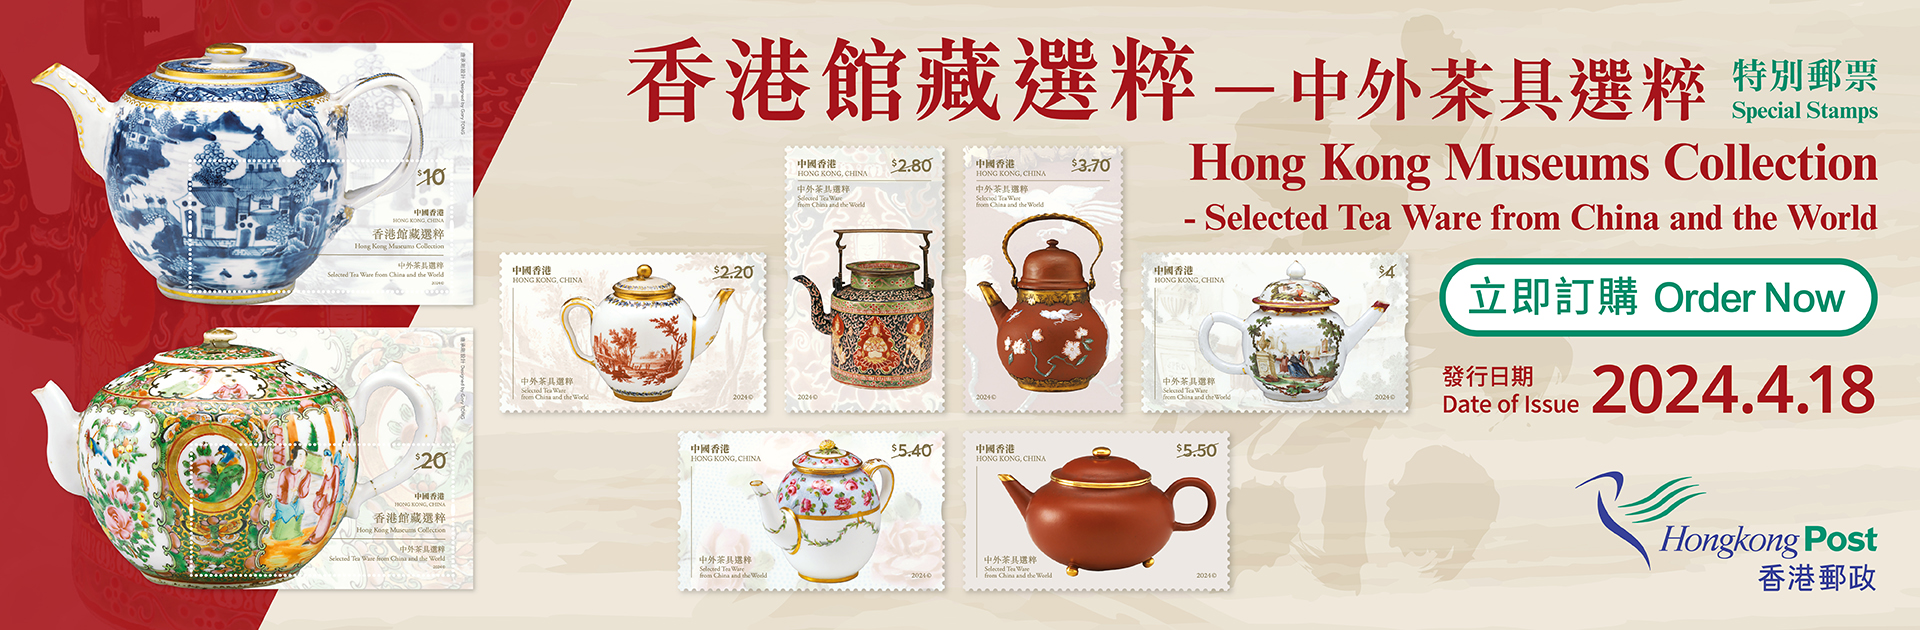 郵品訂購服務 - 「香港館藏選粹 — 中外茶具選粹」